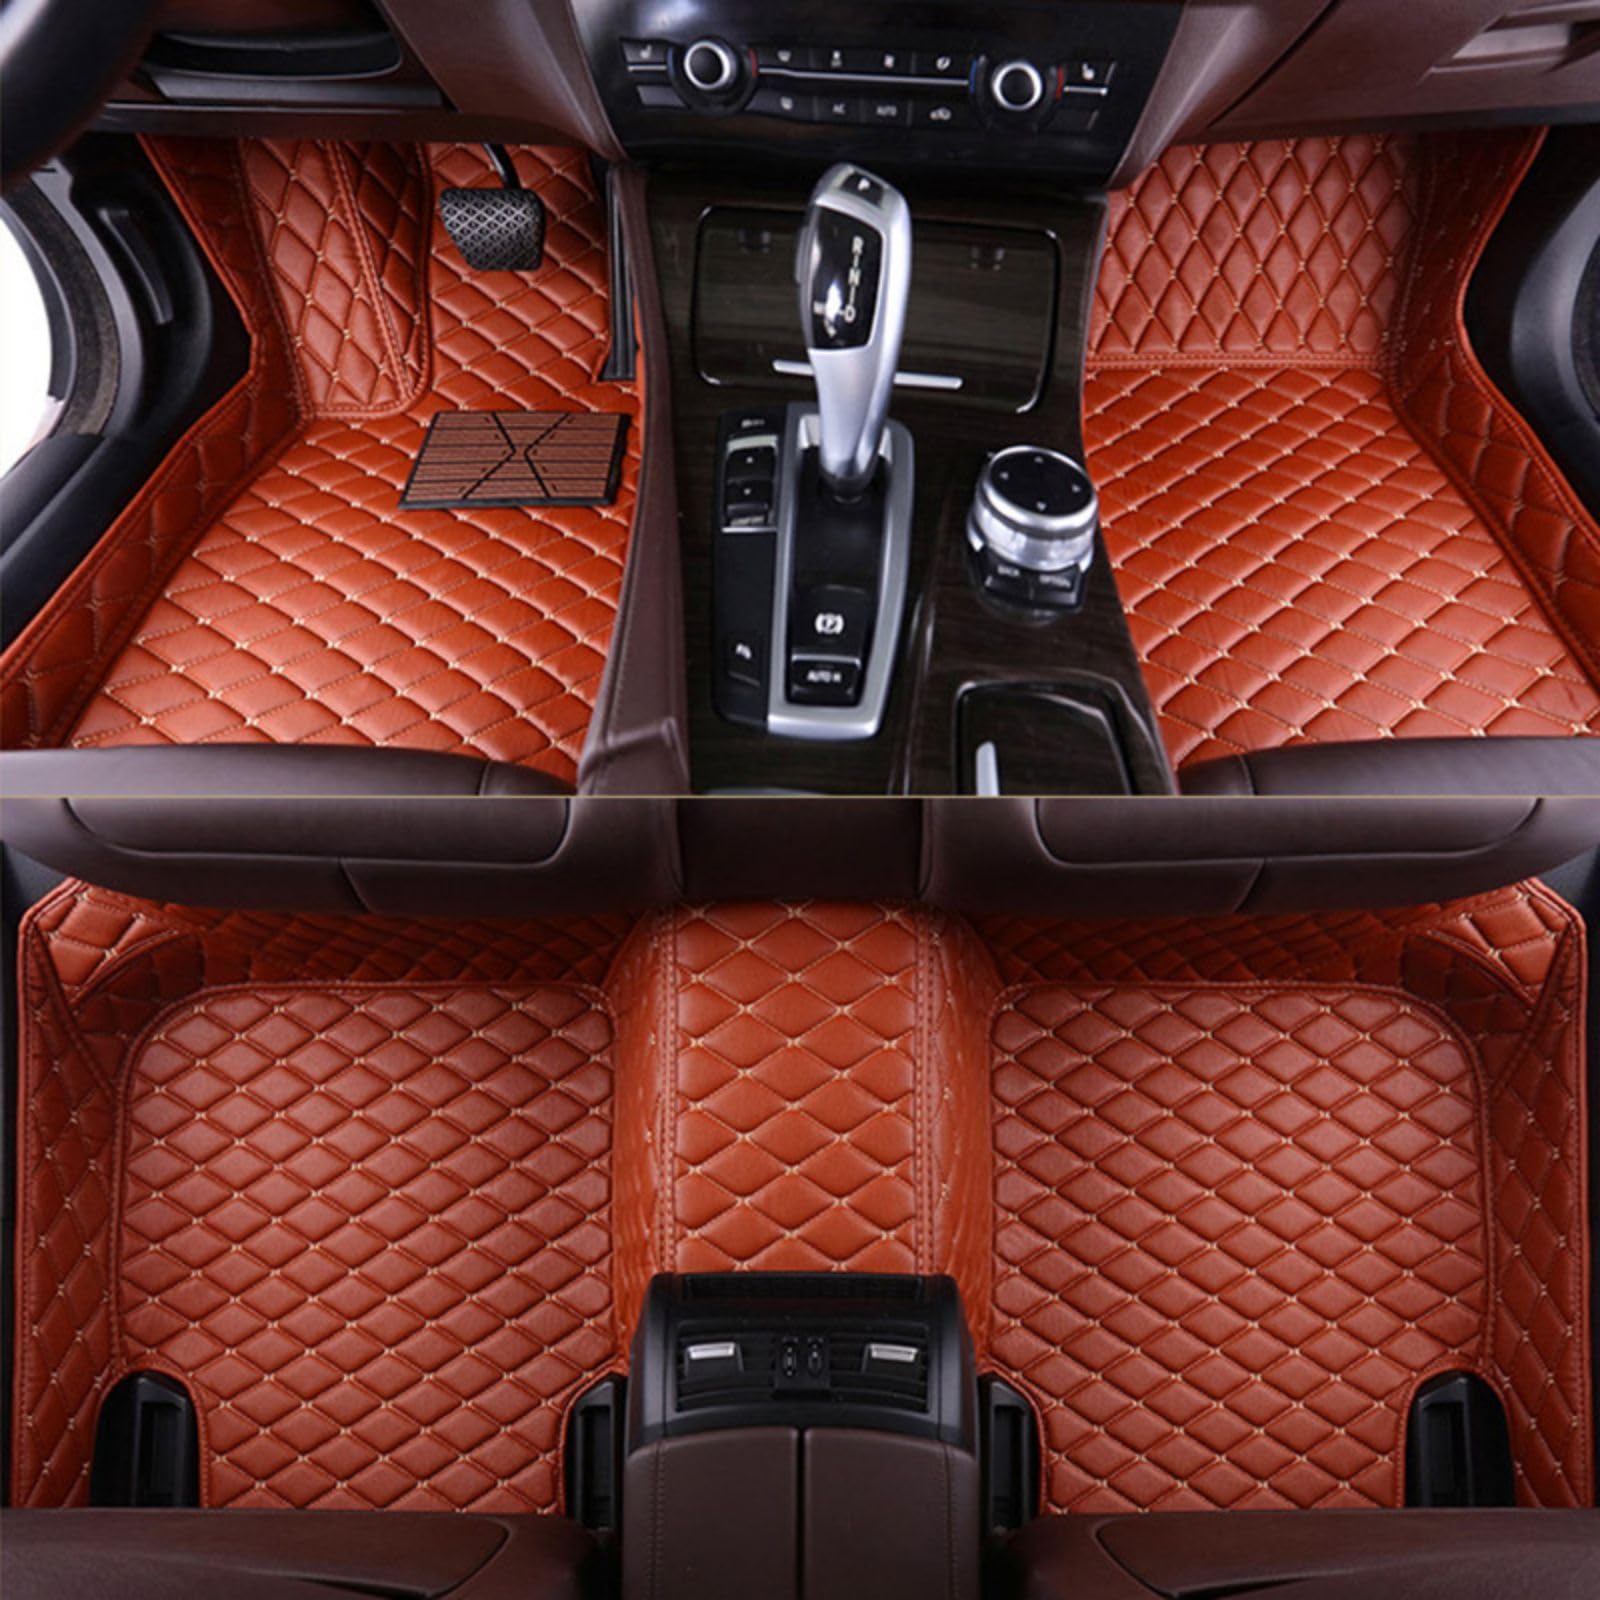 Fussmatten Auto für Audi Q7 (7seats) 2006-2015, PU-Leder Allwetter wasserdichte rutschfeste Interieur-Accessoires,Brown von YPZHGS